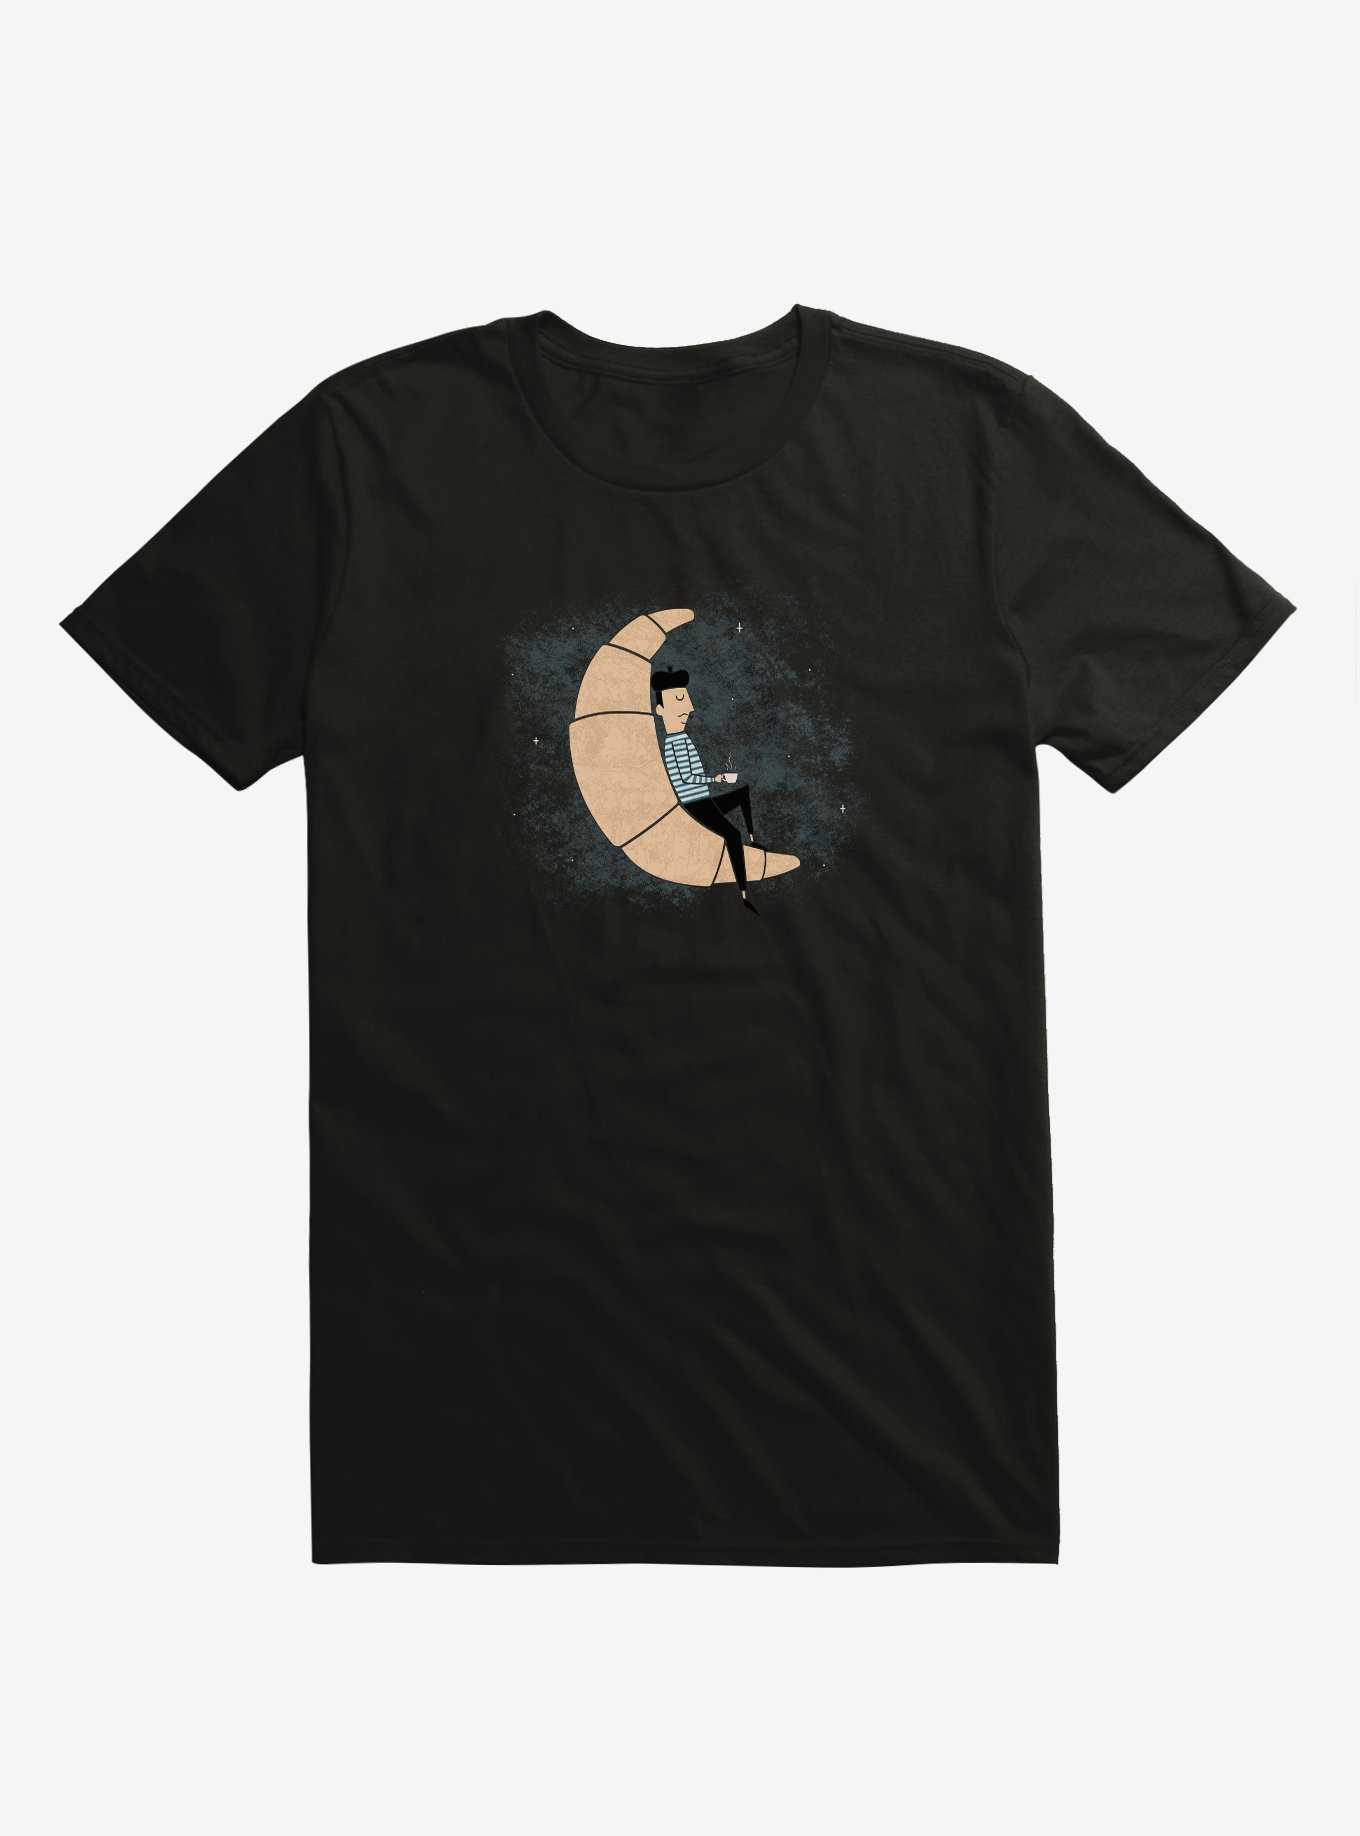 Ze Croissant Moon Black T-Shirt, , hi-res